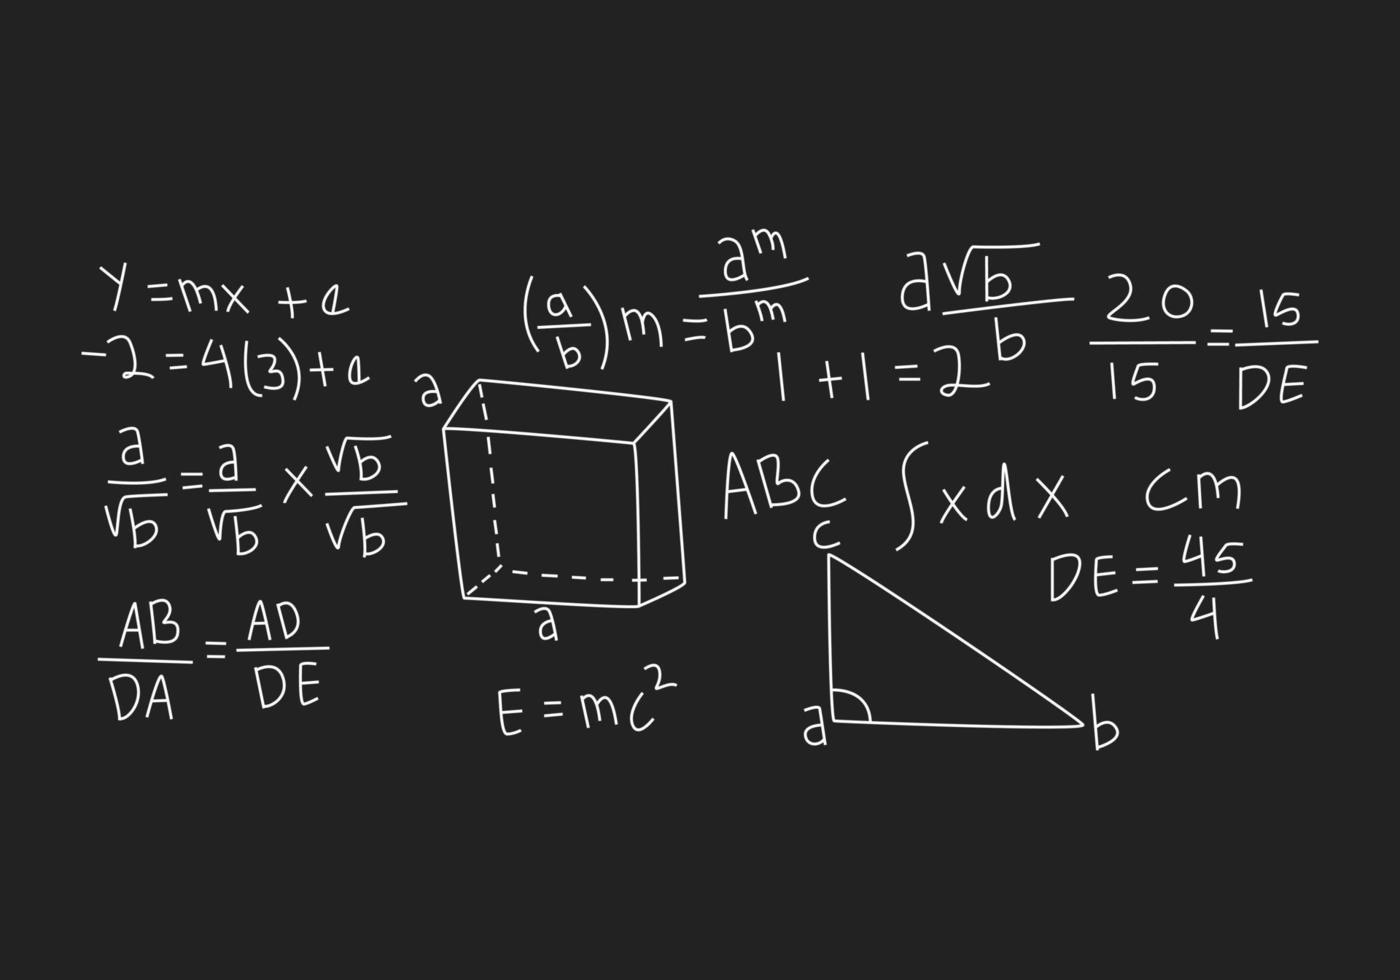 realistische wiskunde schoolbord achtergrond afbeelding vector